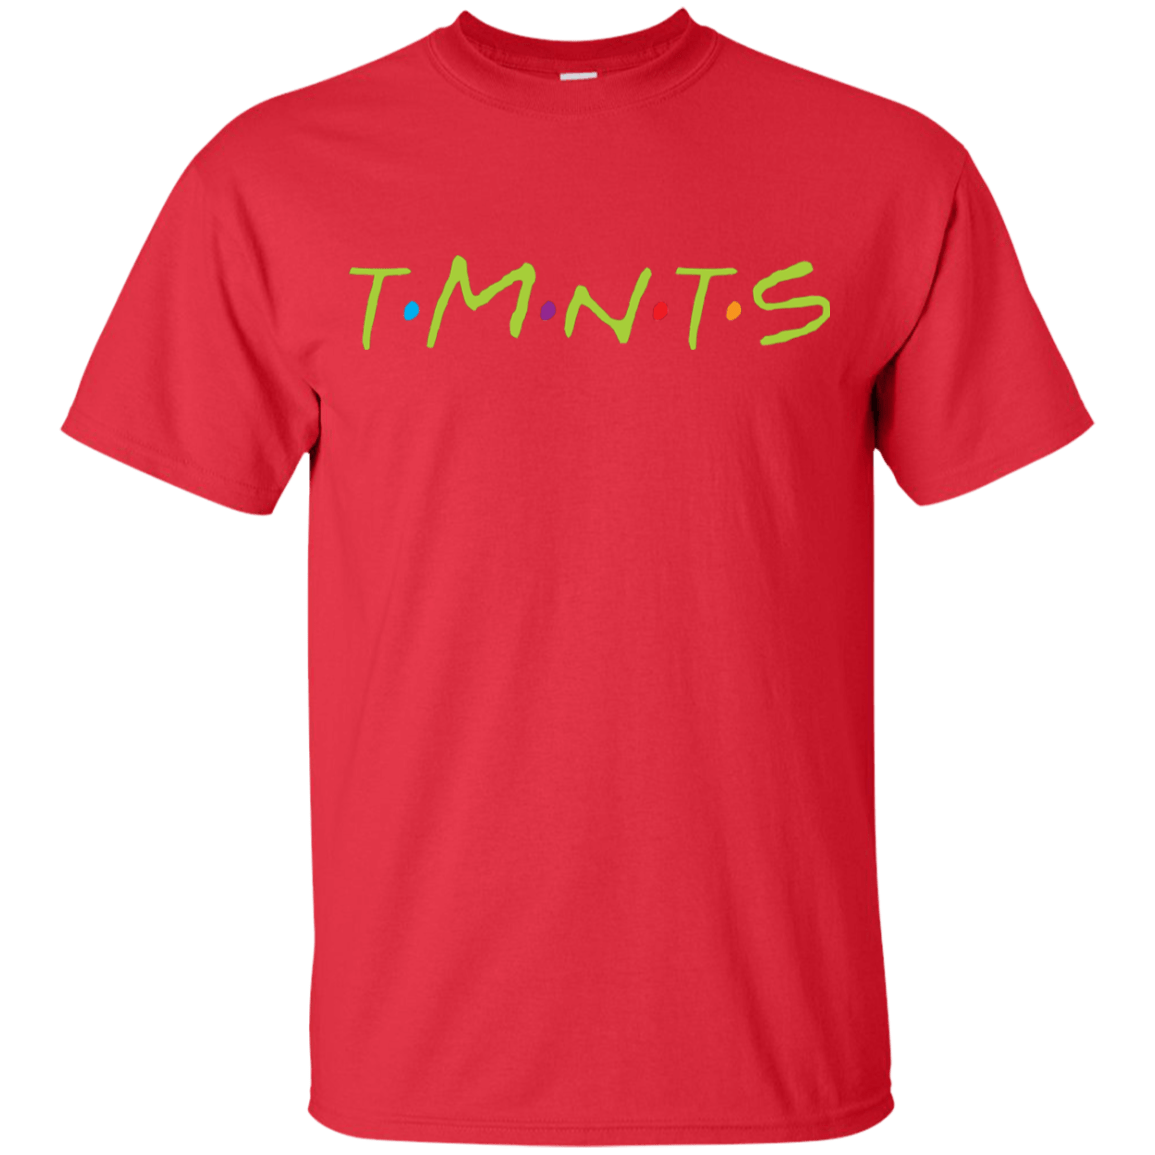 T-Shirts Red / YXS TMNTS Youth T-Shirt